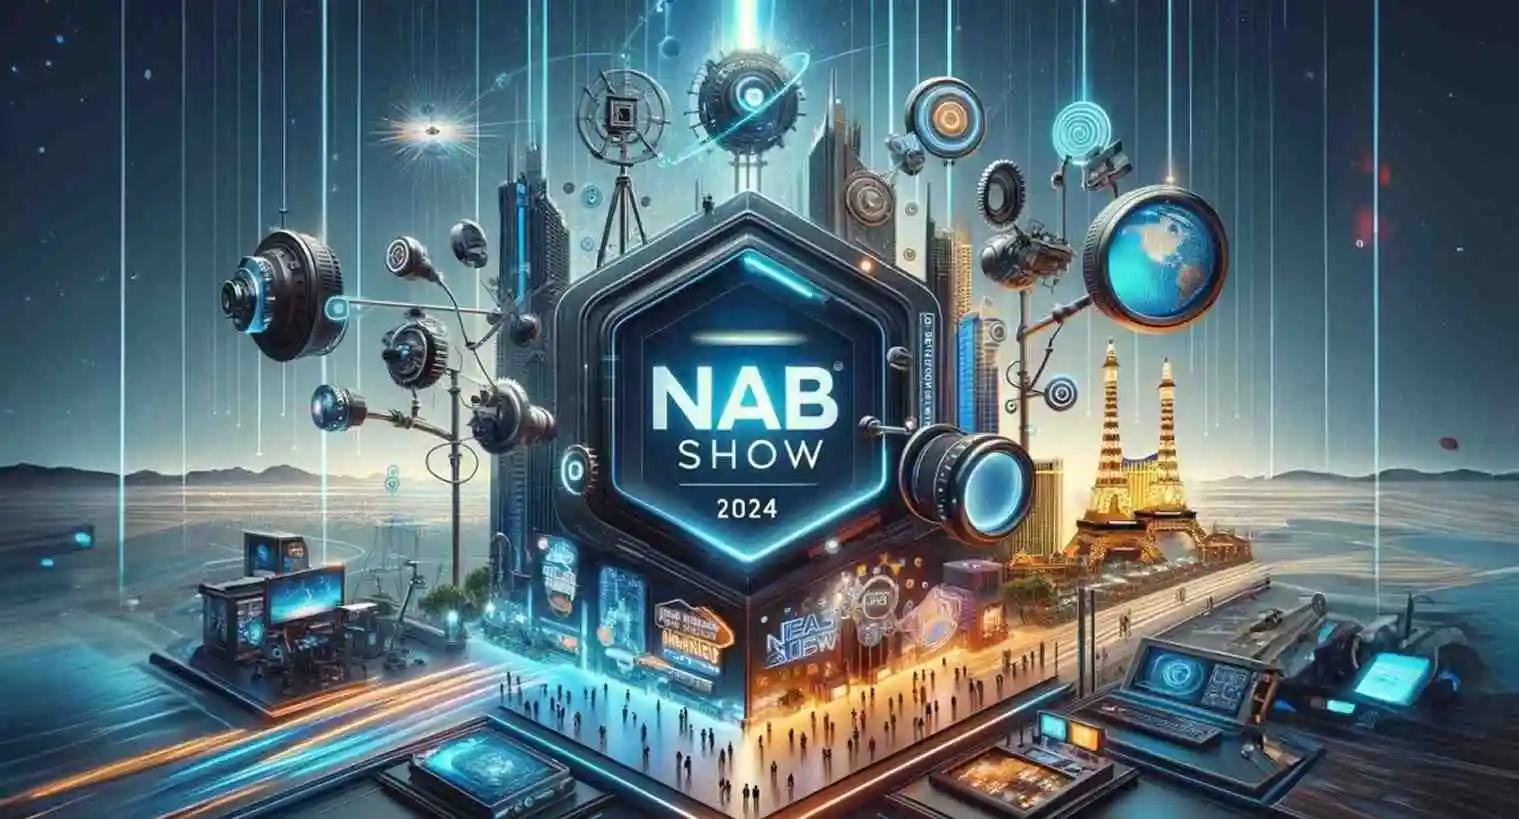 Foto - Tendenze e novità dal NAB 2024 di Las Vegas con Alfa Networks, Sony e Small Pixels